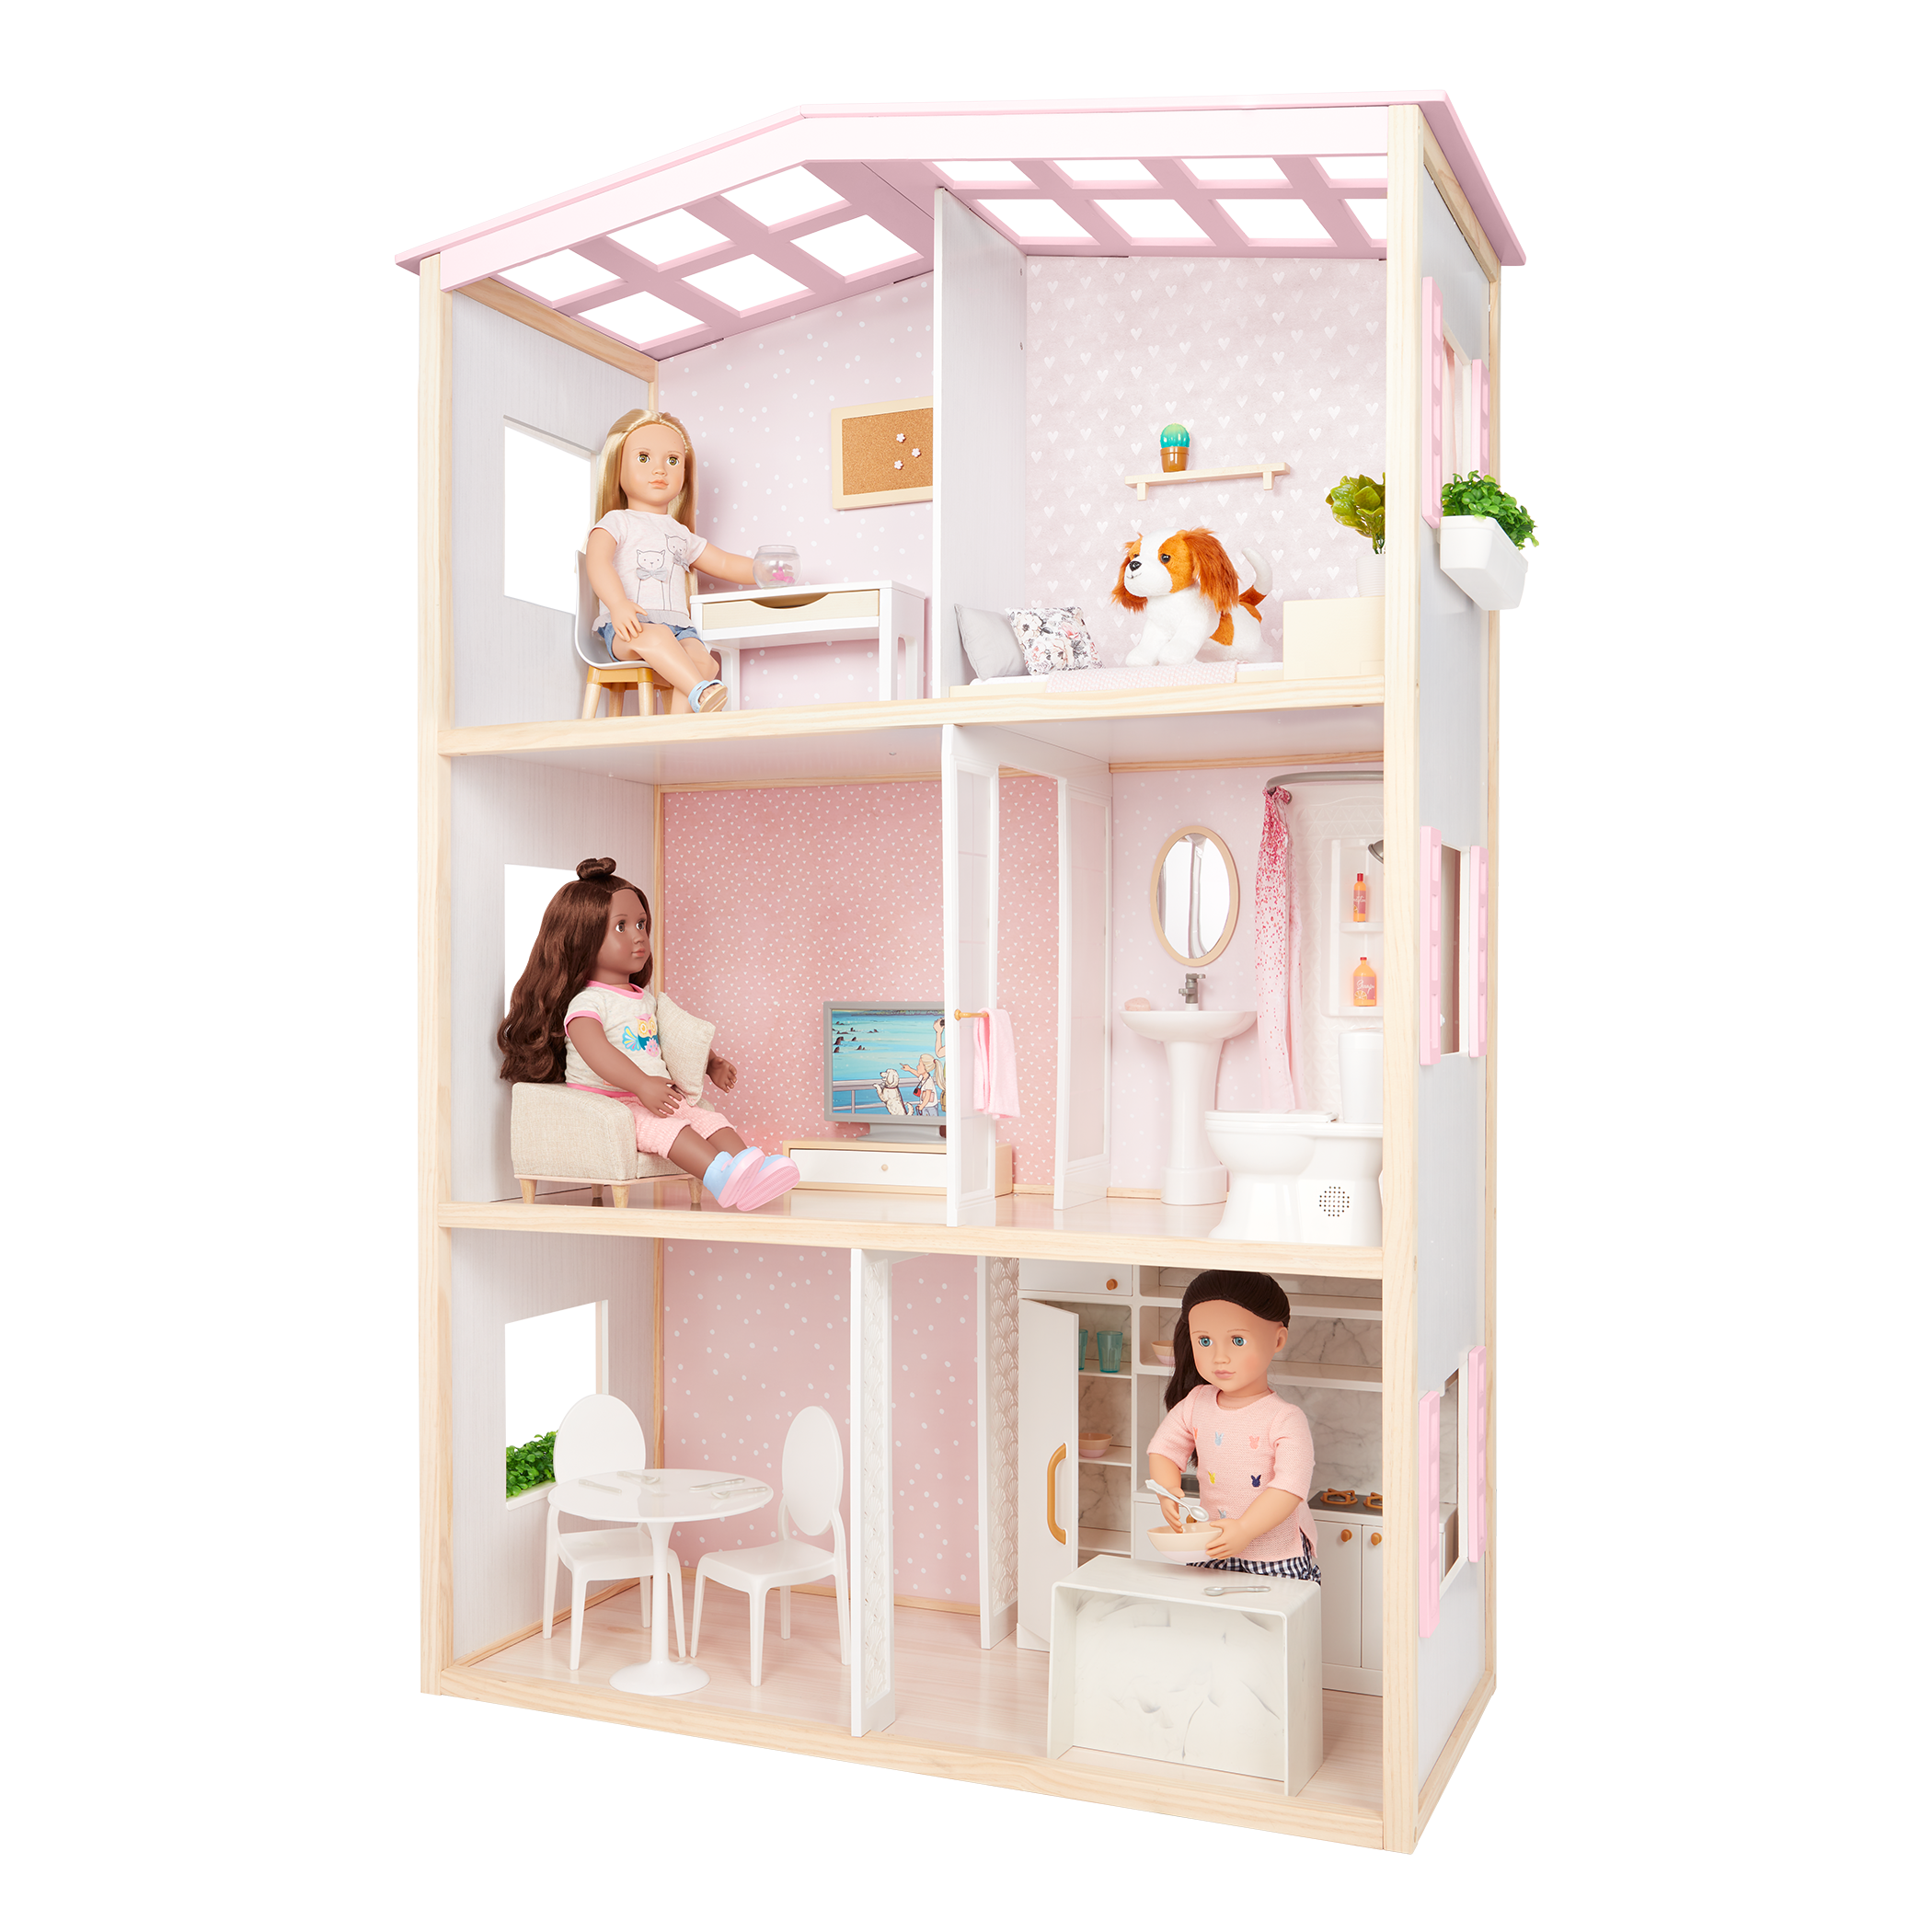 Dollhouse for 18-inch dolls